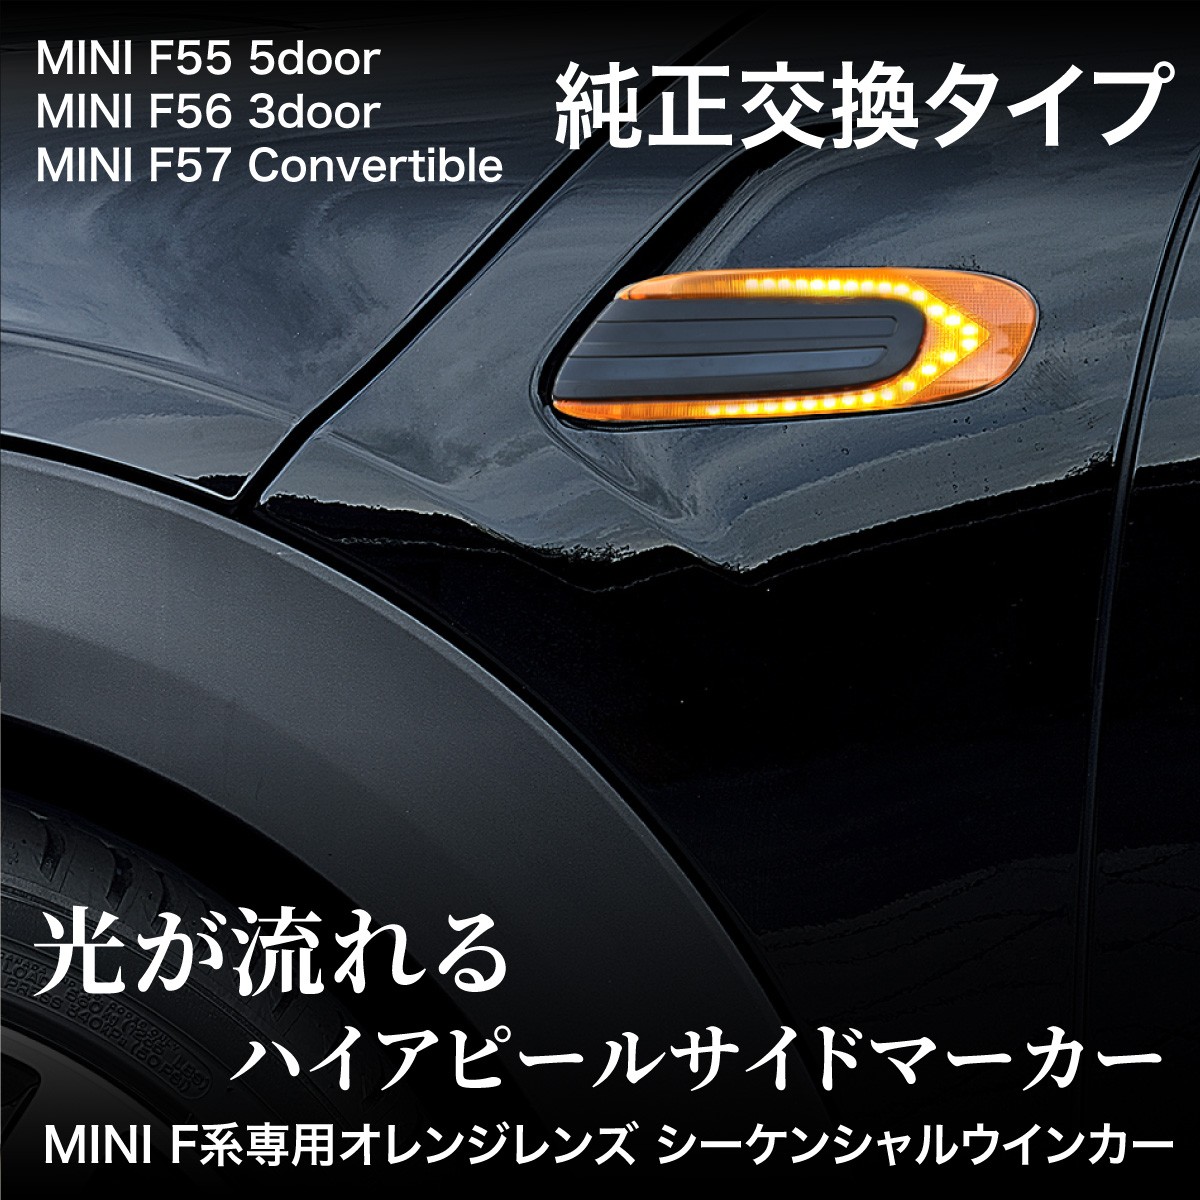 MINI ミニ F55 F56 F57 シーケンシャルウインカー シーケンシャル 流れる LED ウインカー サイドマーカー オレンジレンズ